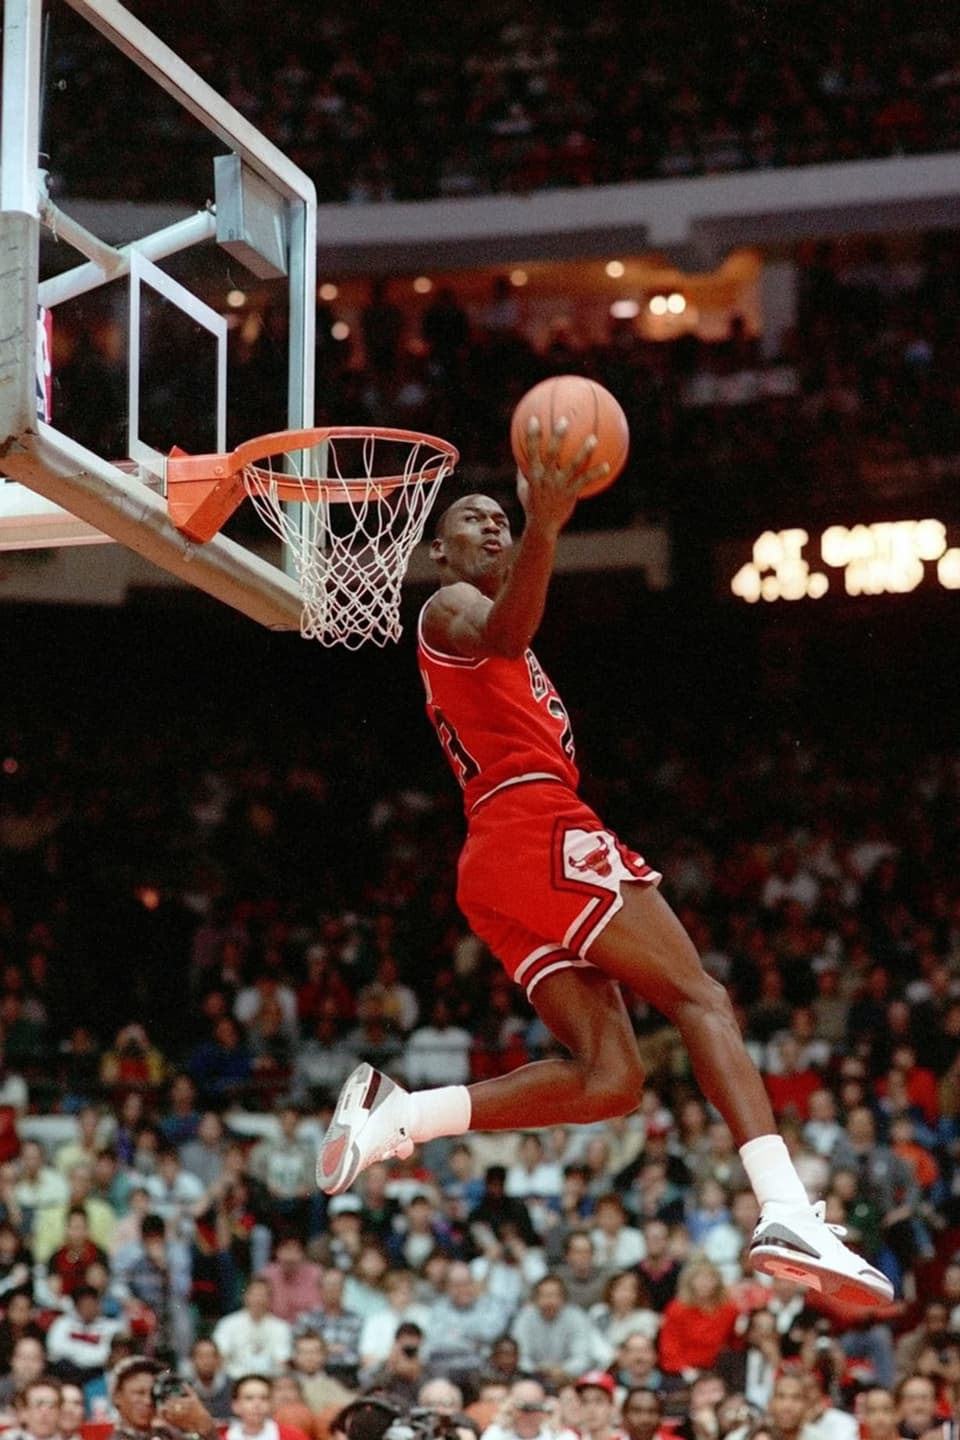 Ein Mann in roter Sportkleidung fliegt rückwärts auf einen Basketballkorb und versenkt den Ball sicher im Korb.